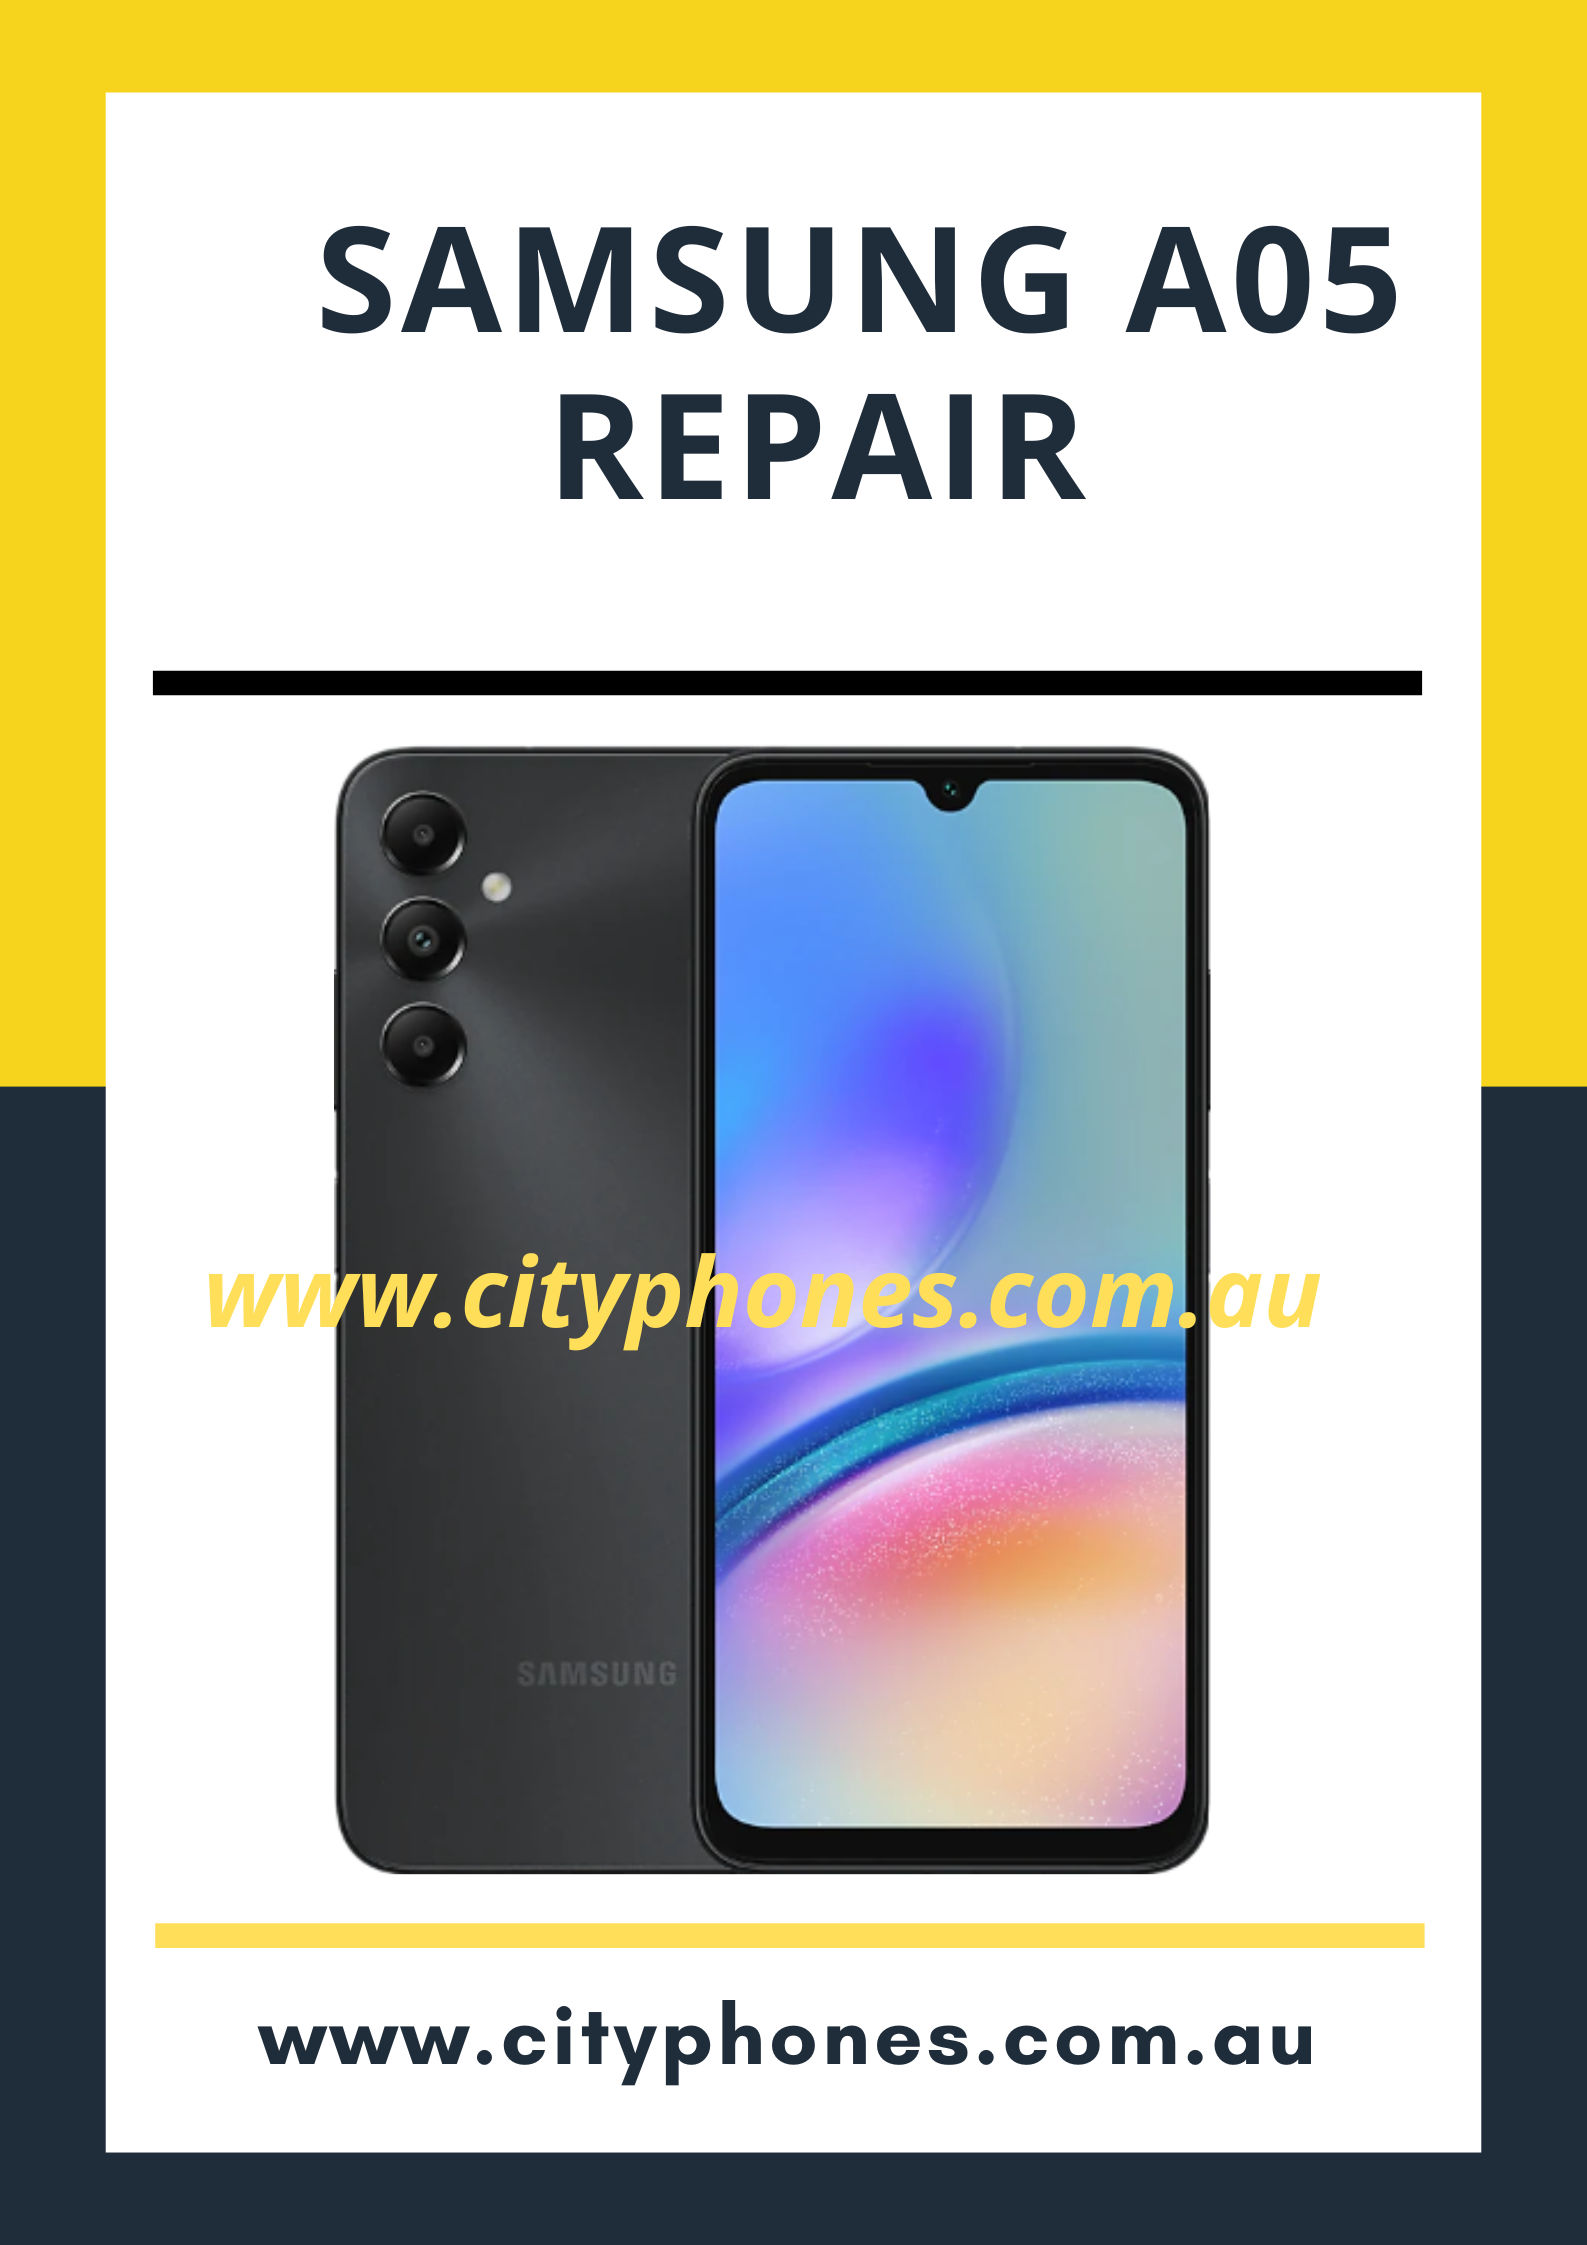 Samsung A05 Repair Phone